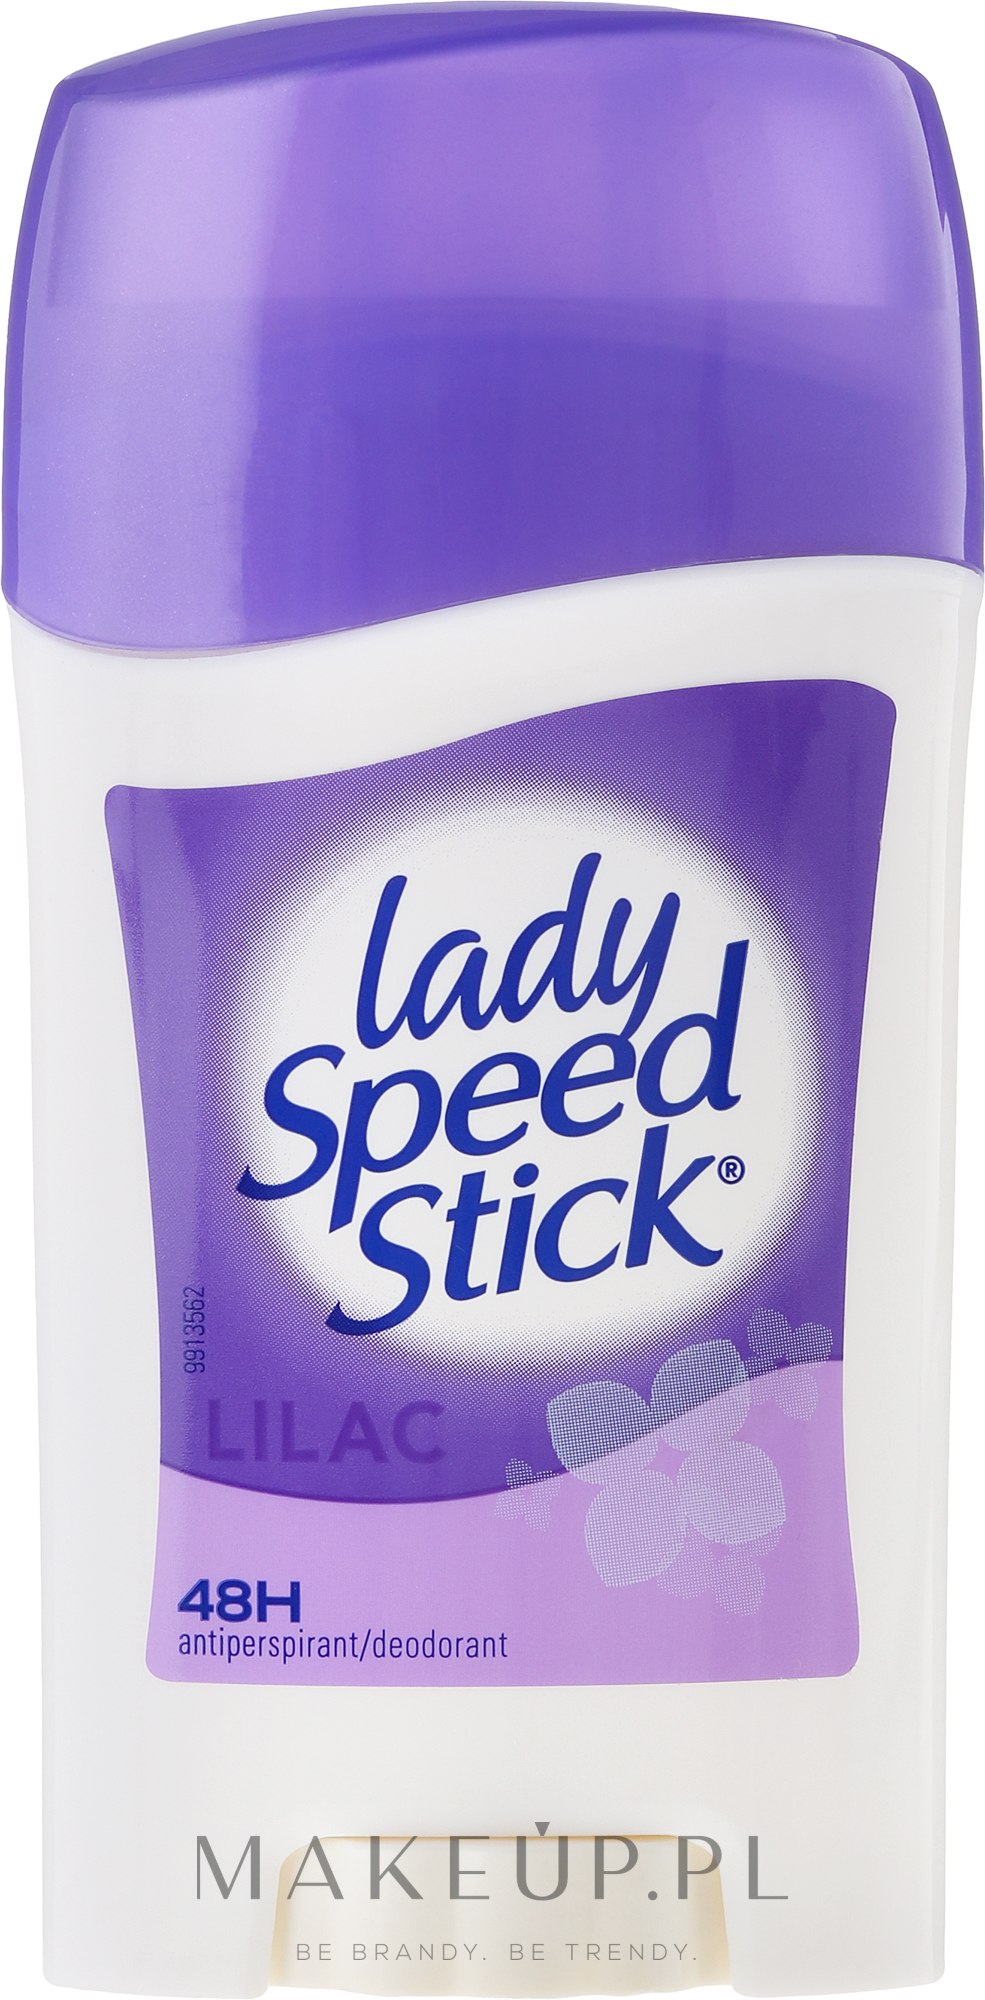 Antyperspirant-dezodorant w sztyfcie - Lady Speed Stick Lilac Deodorant — Zdjęcie 45 g